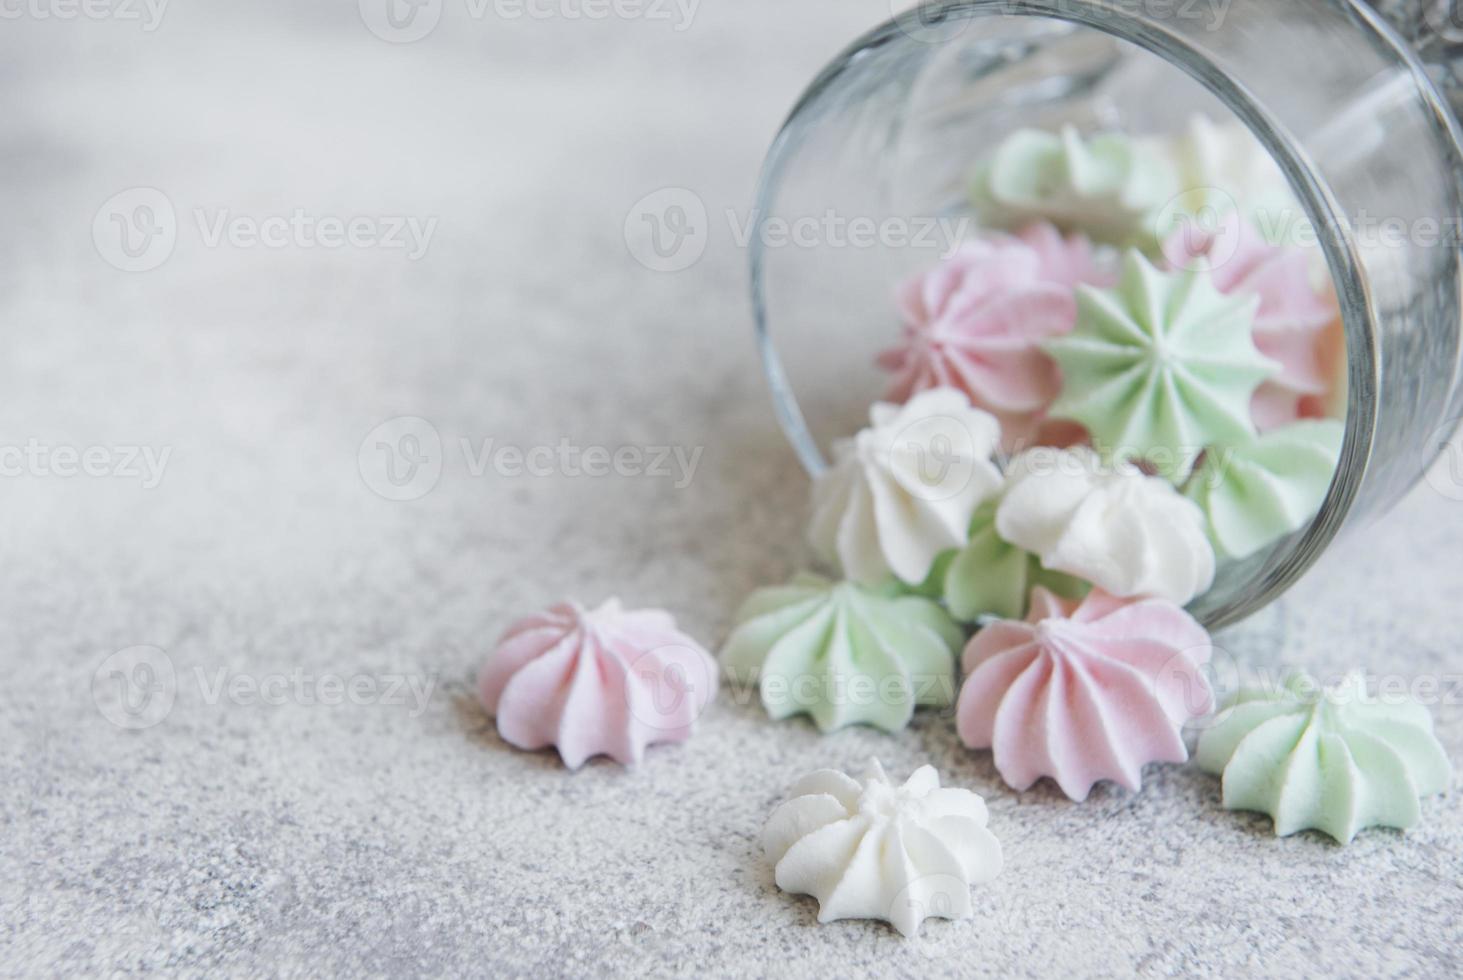 pequeños merengues blancos, rosas y verdes en el vaso foto